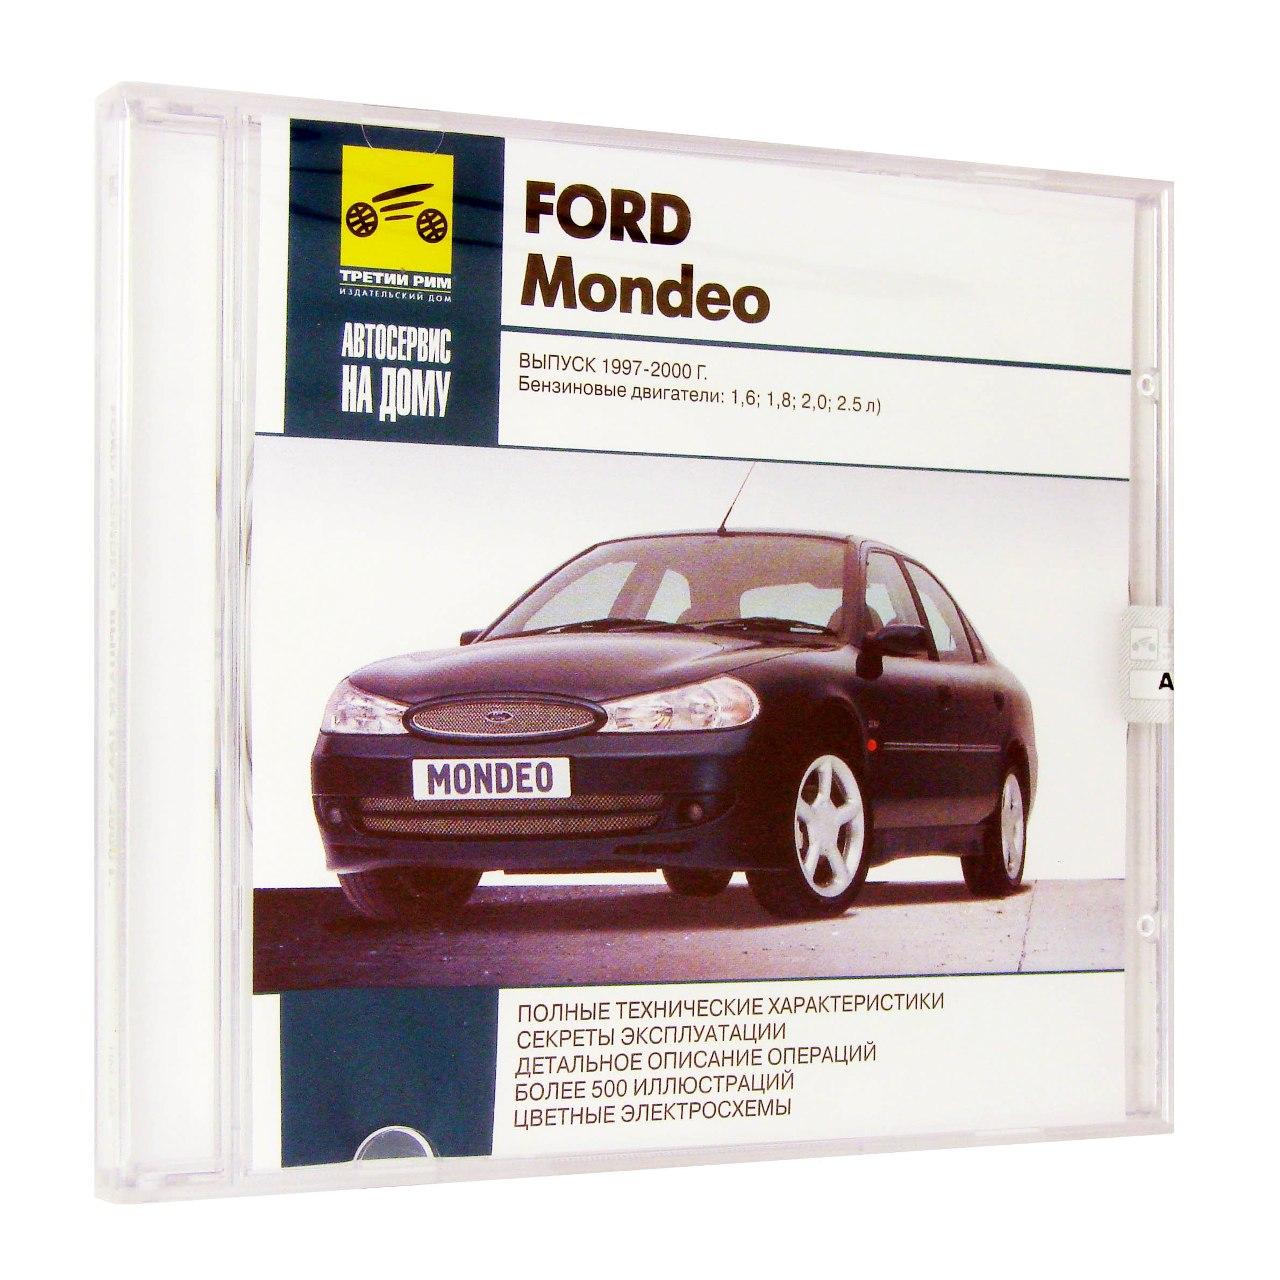 Компьютерный компакт-диск Ford Mondeo Выпуск 1997-2000 Автосервис на дому. (ПК), фирма "RMG Multimedia", 1CD